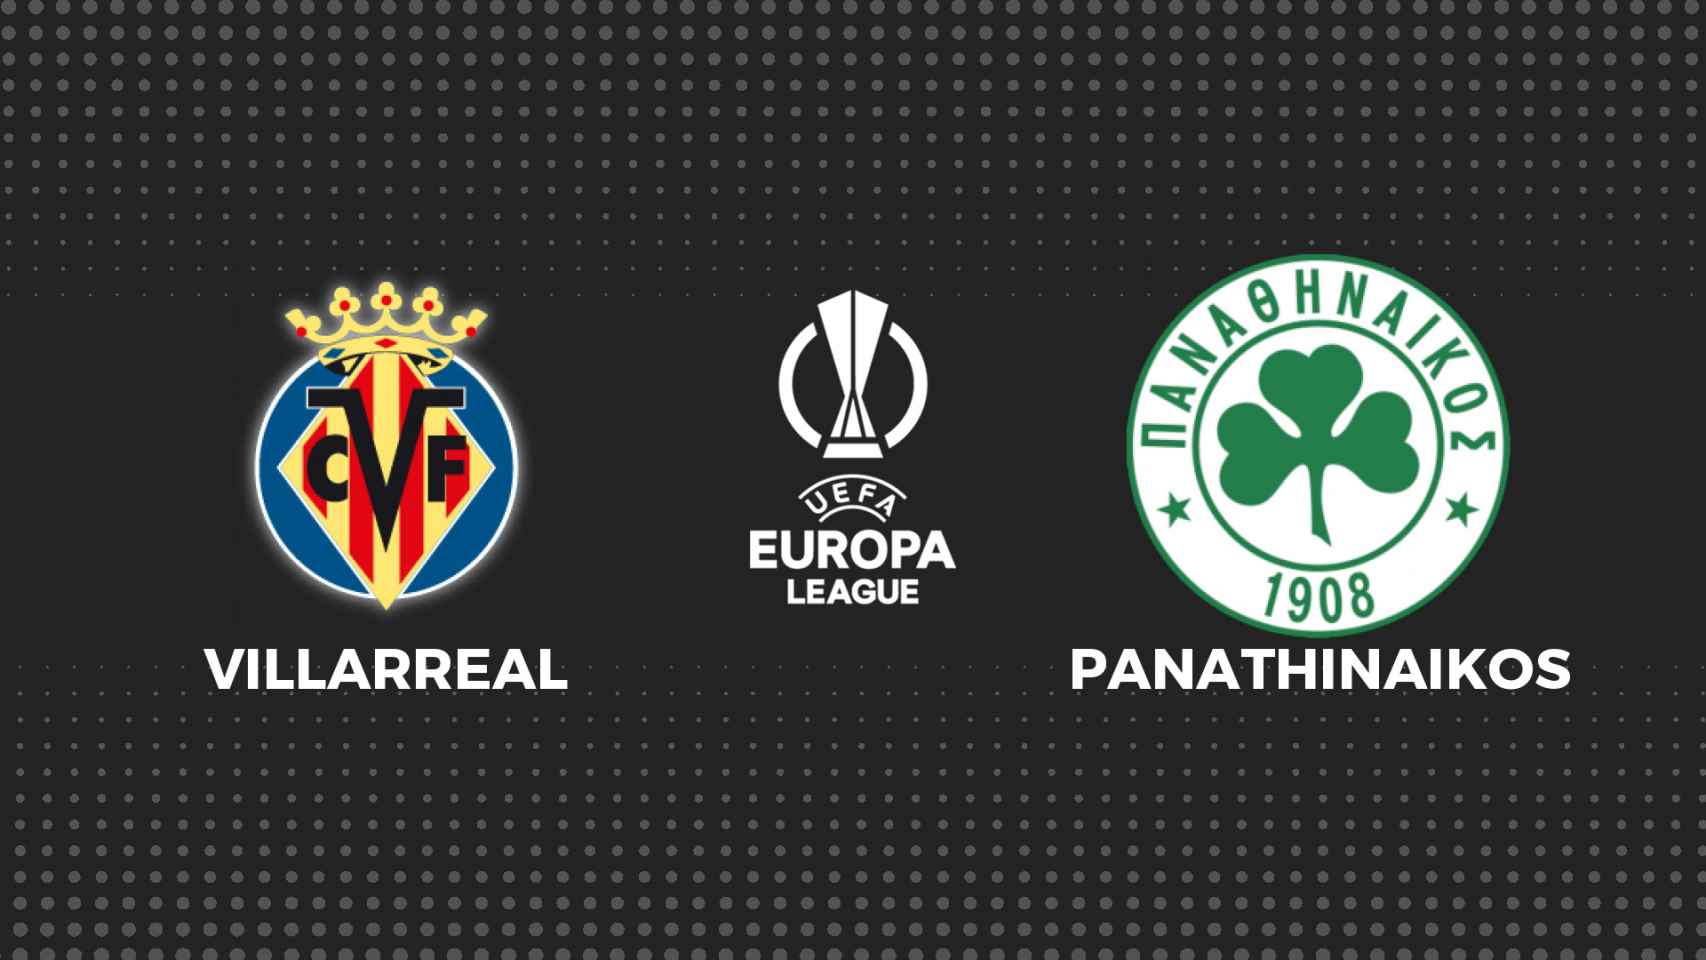 Villarreal - Panathinaikos, fútbol en directo